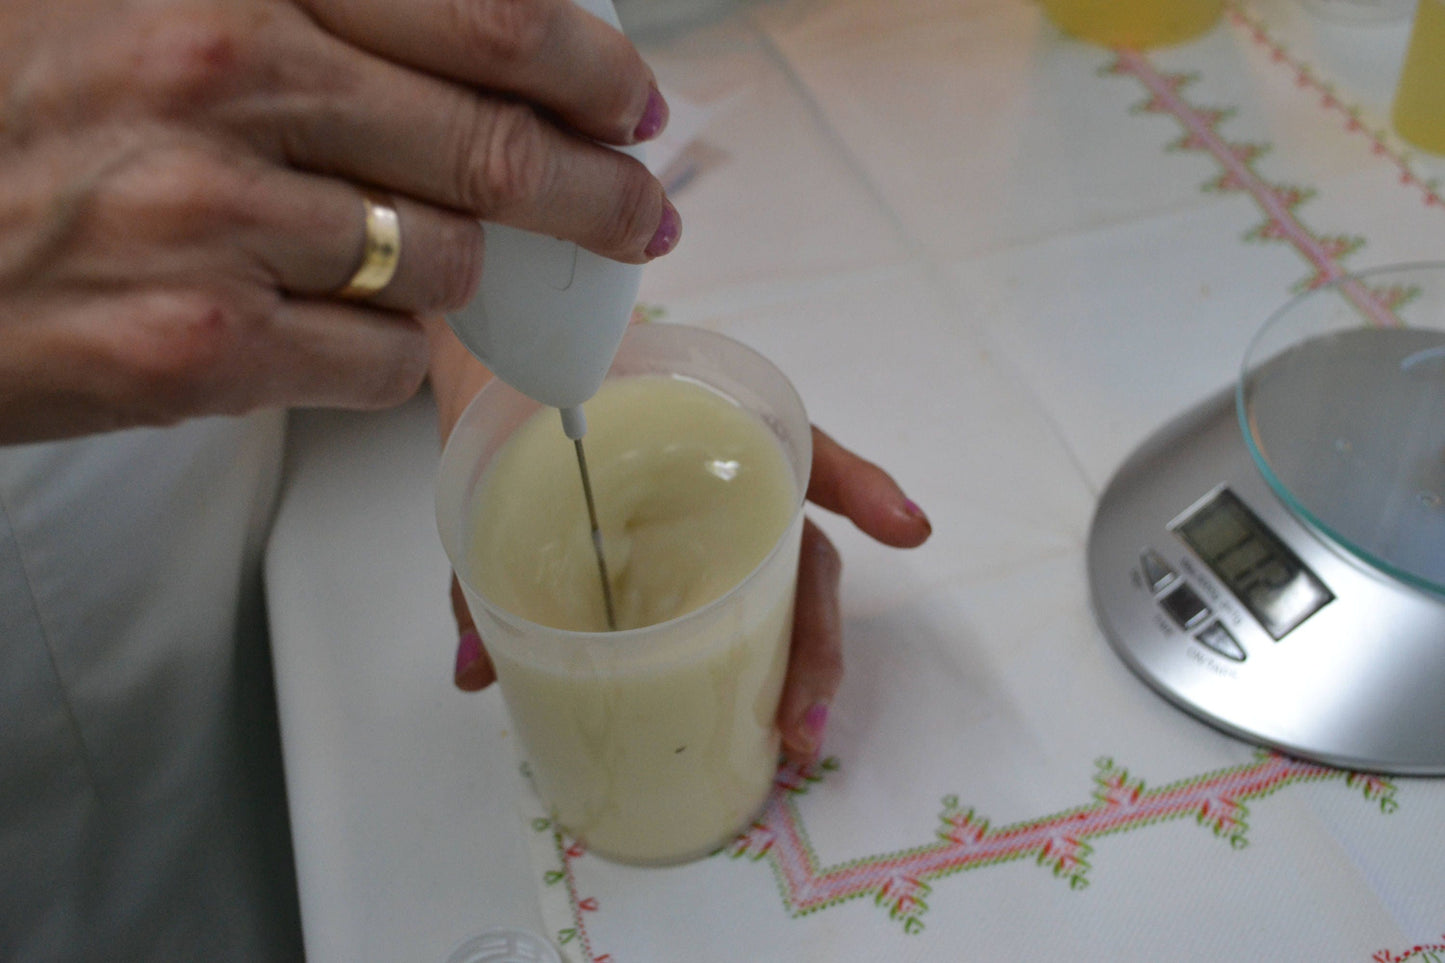 Crema Reparadora - Piel Seca y Sensible, Crema de Caléndula, Crema Facial, pieles sensibles y atópicas dermatitis, rosácea, ezcemas, muy hidratante y nutritiva.